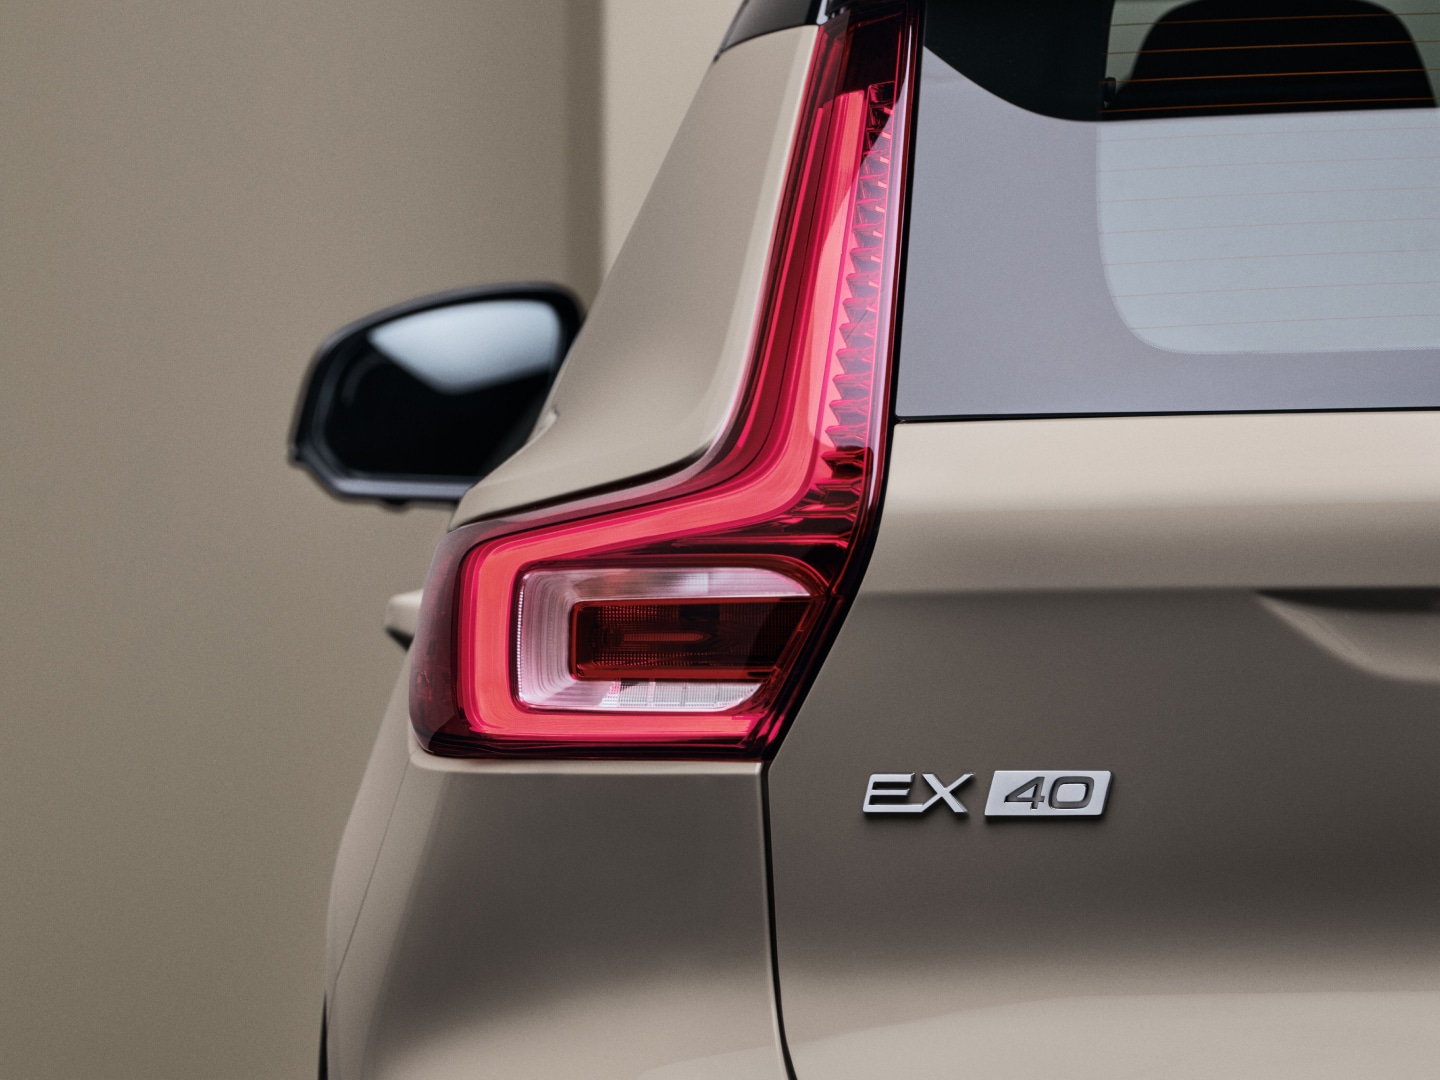 Задние фонари полностью электрического Volvo EX40.